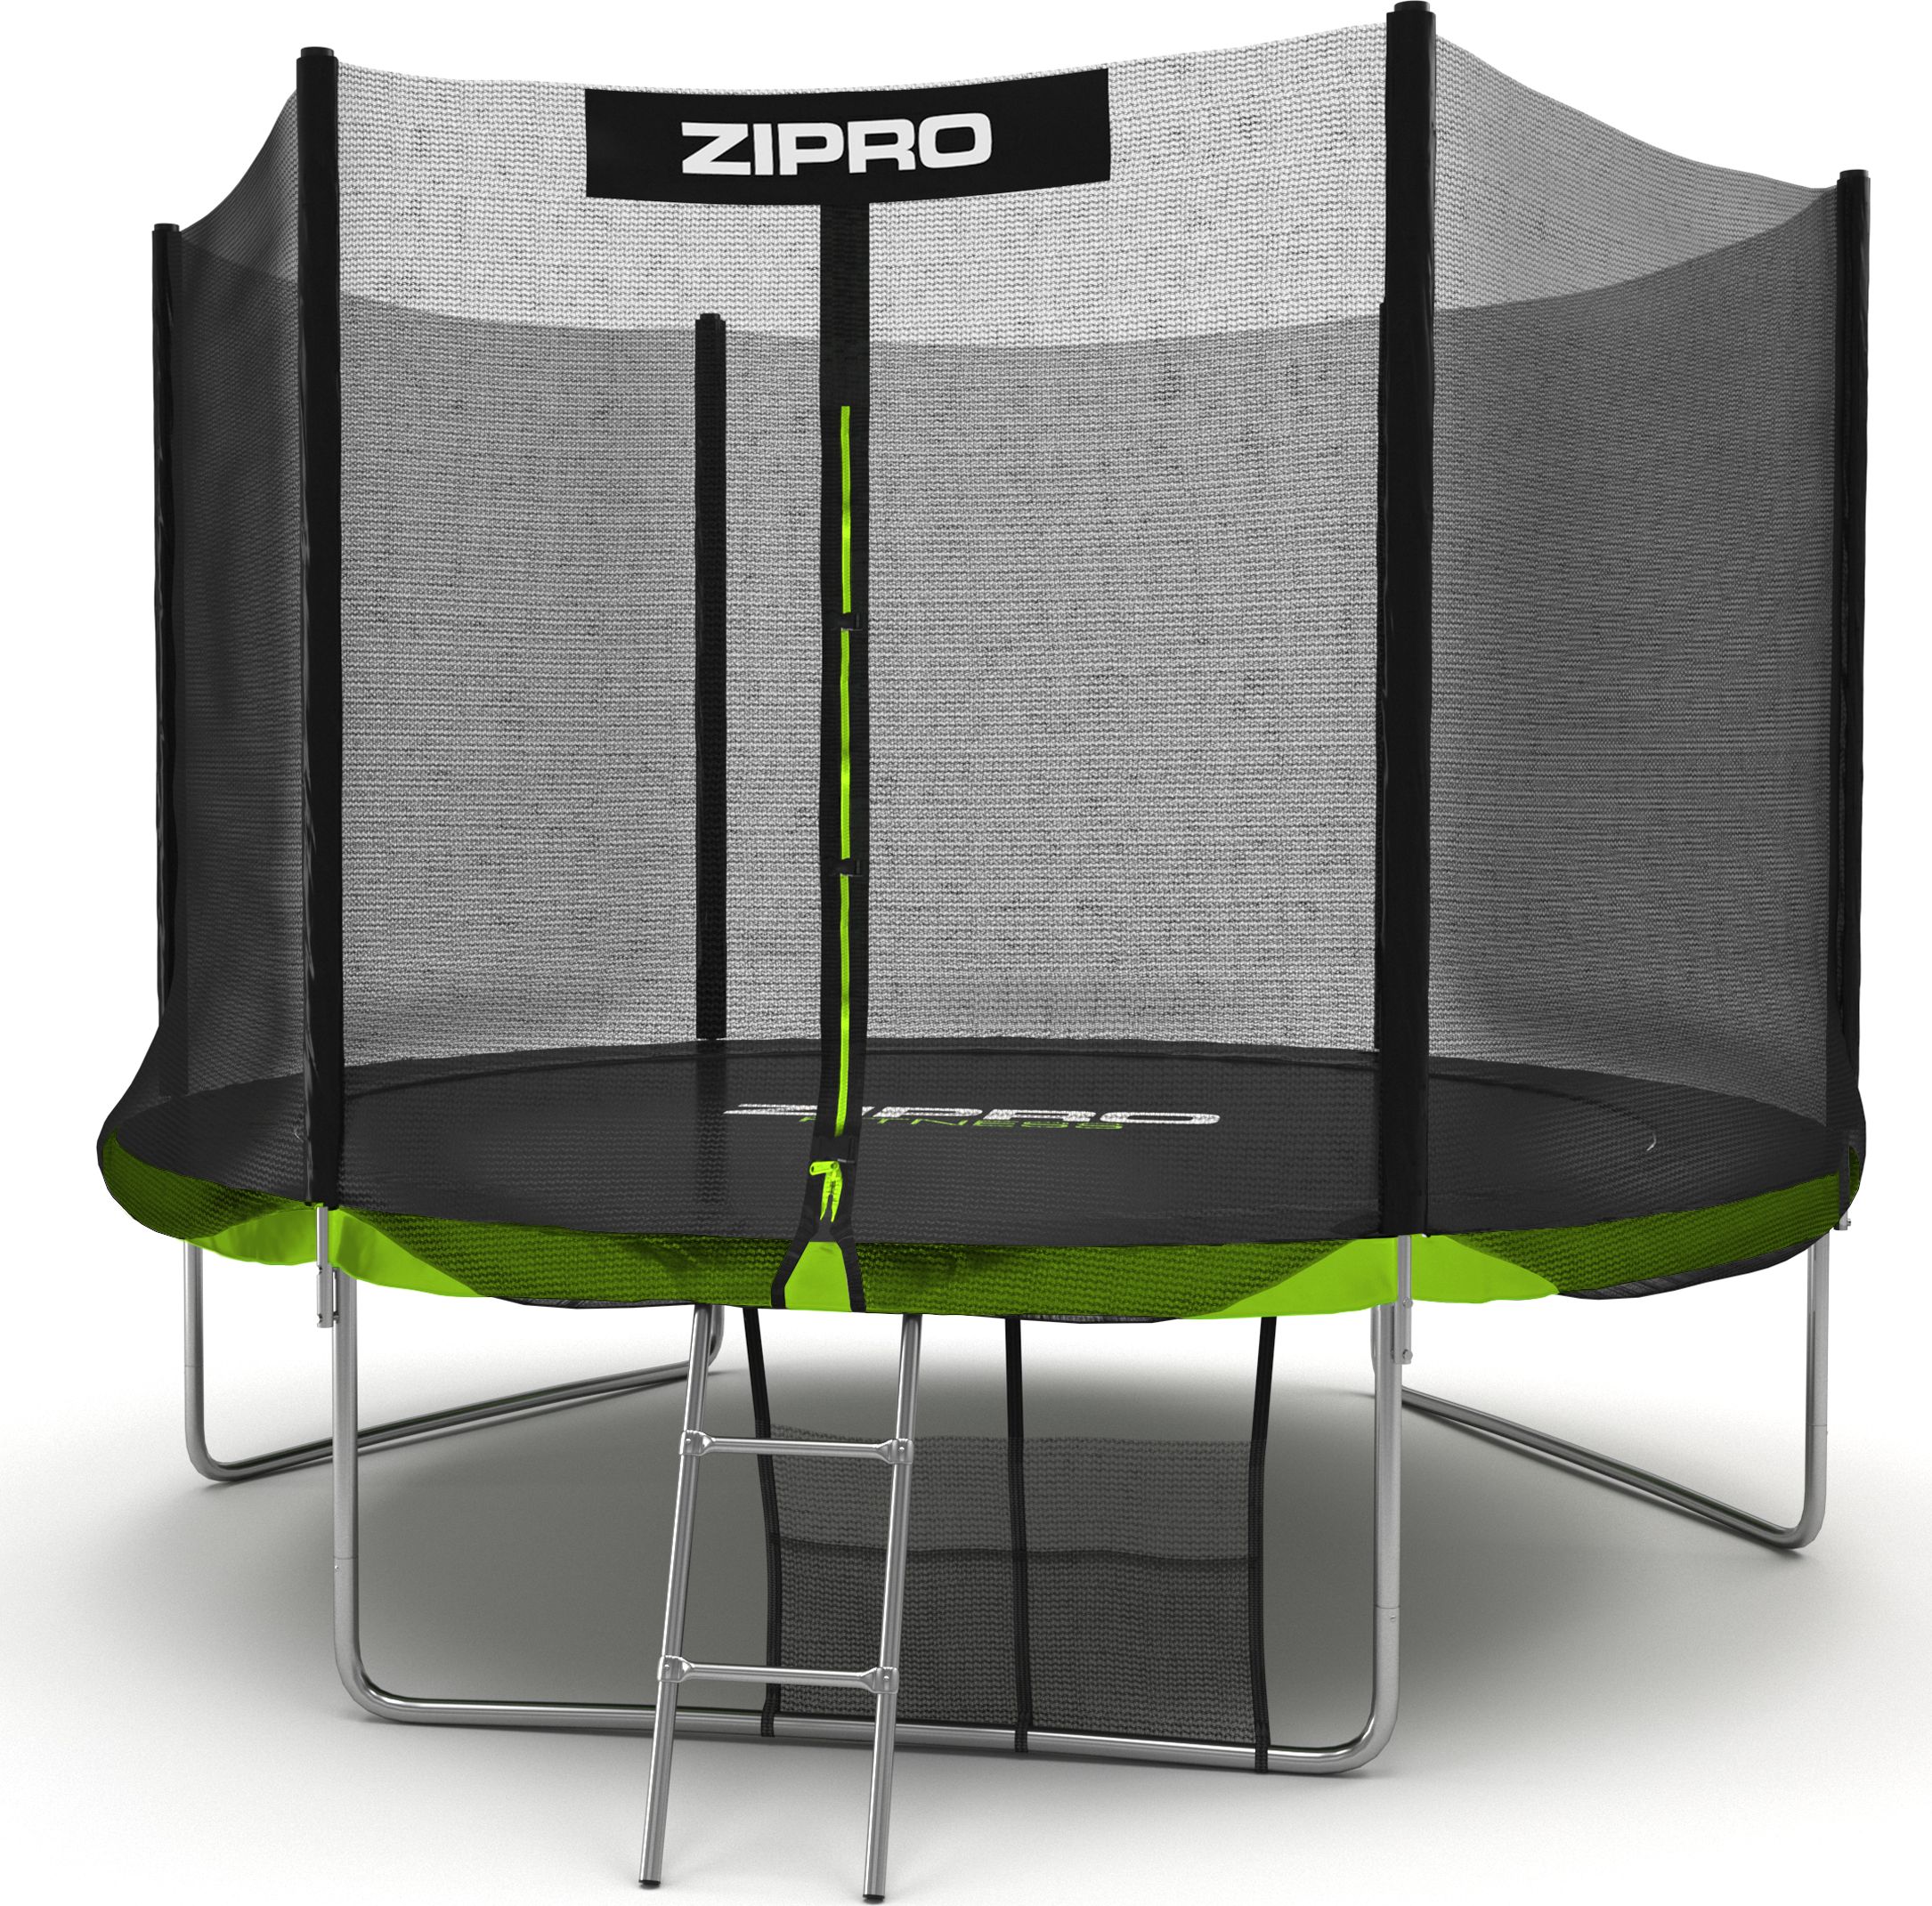 

Батут с защитной сеткой Zipro Jump PRO 10FT, 312 см (33333-45555), Зеленый + черный